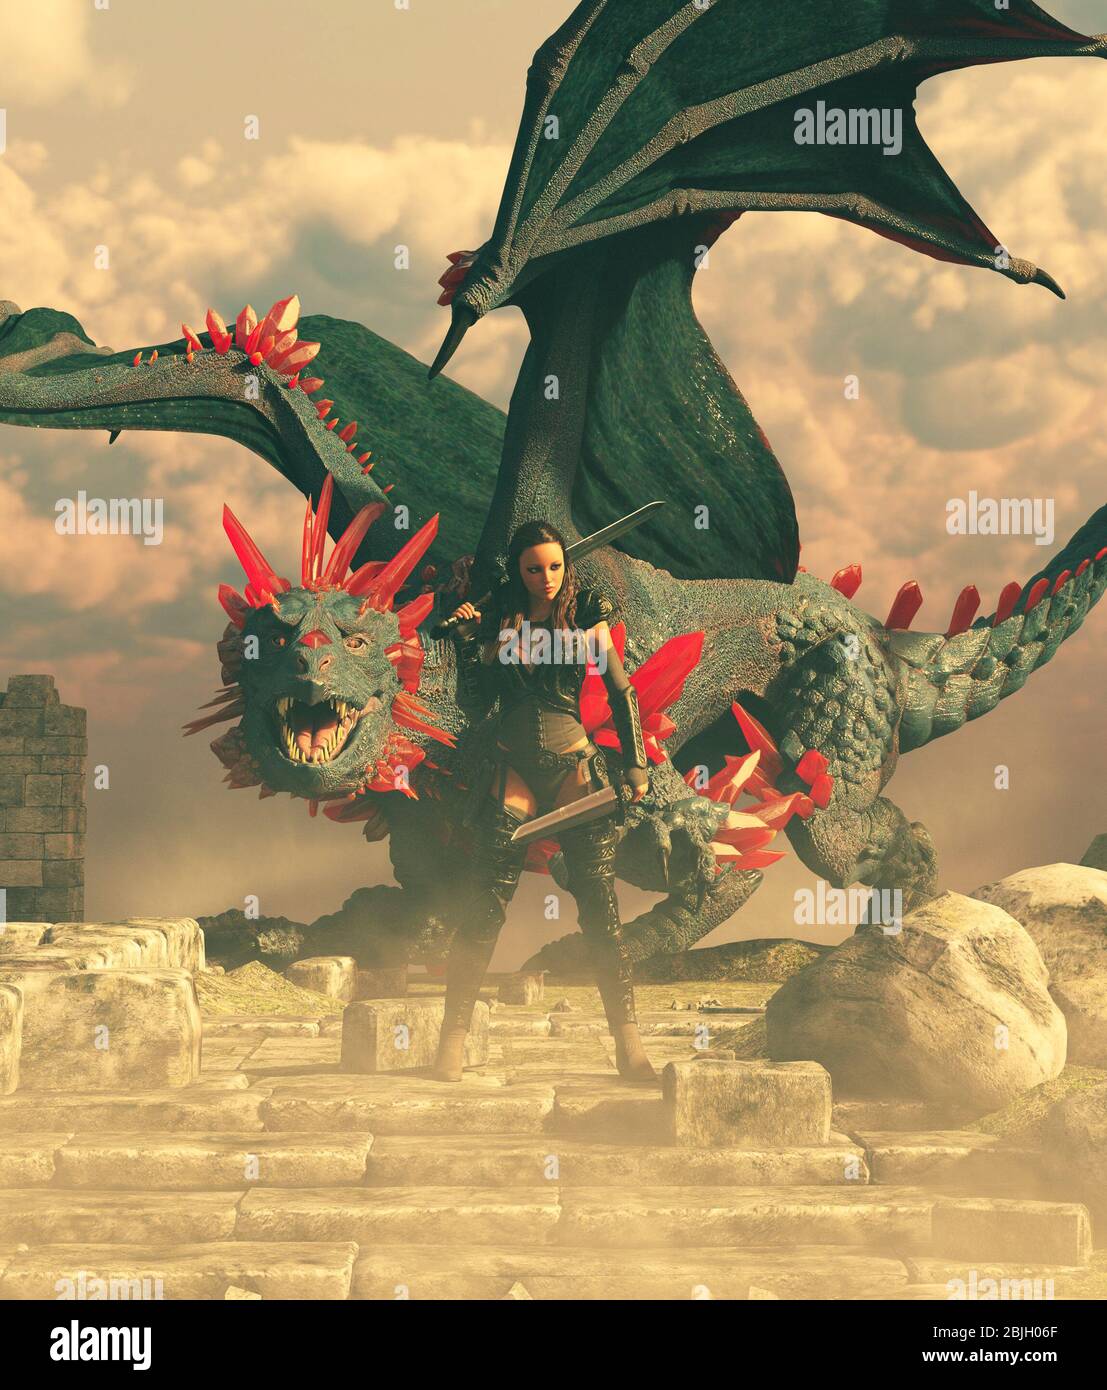 Una guerriera con un drago,fantasy rendering 3d per la copertina del libro o illustrazione del libro Foto Stock